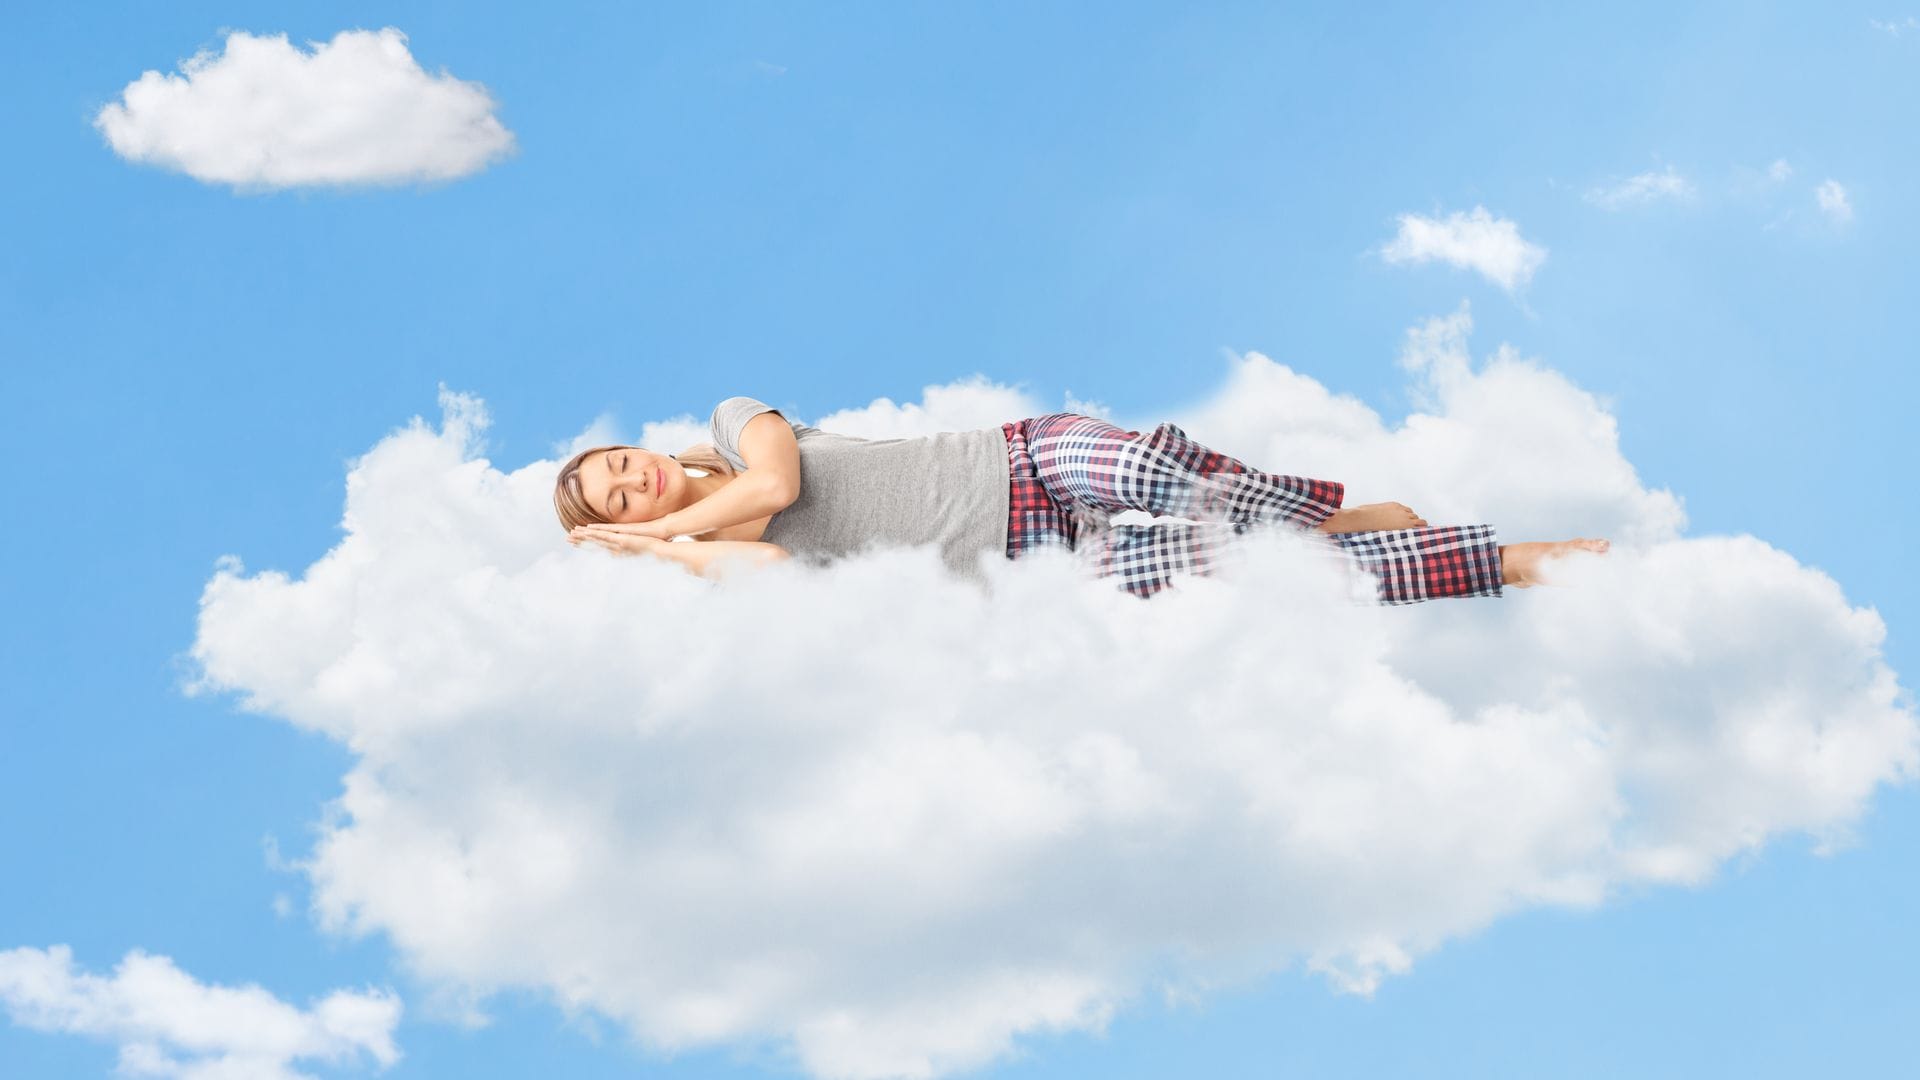 mujer durmiendo plácidamente sobre una nube